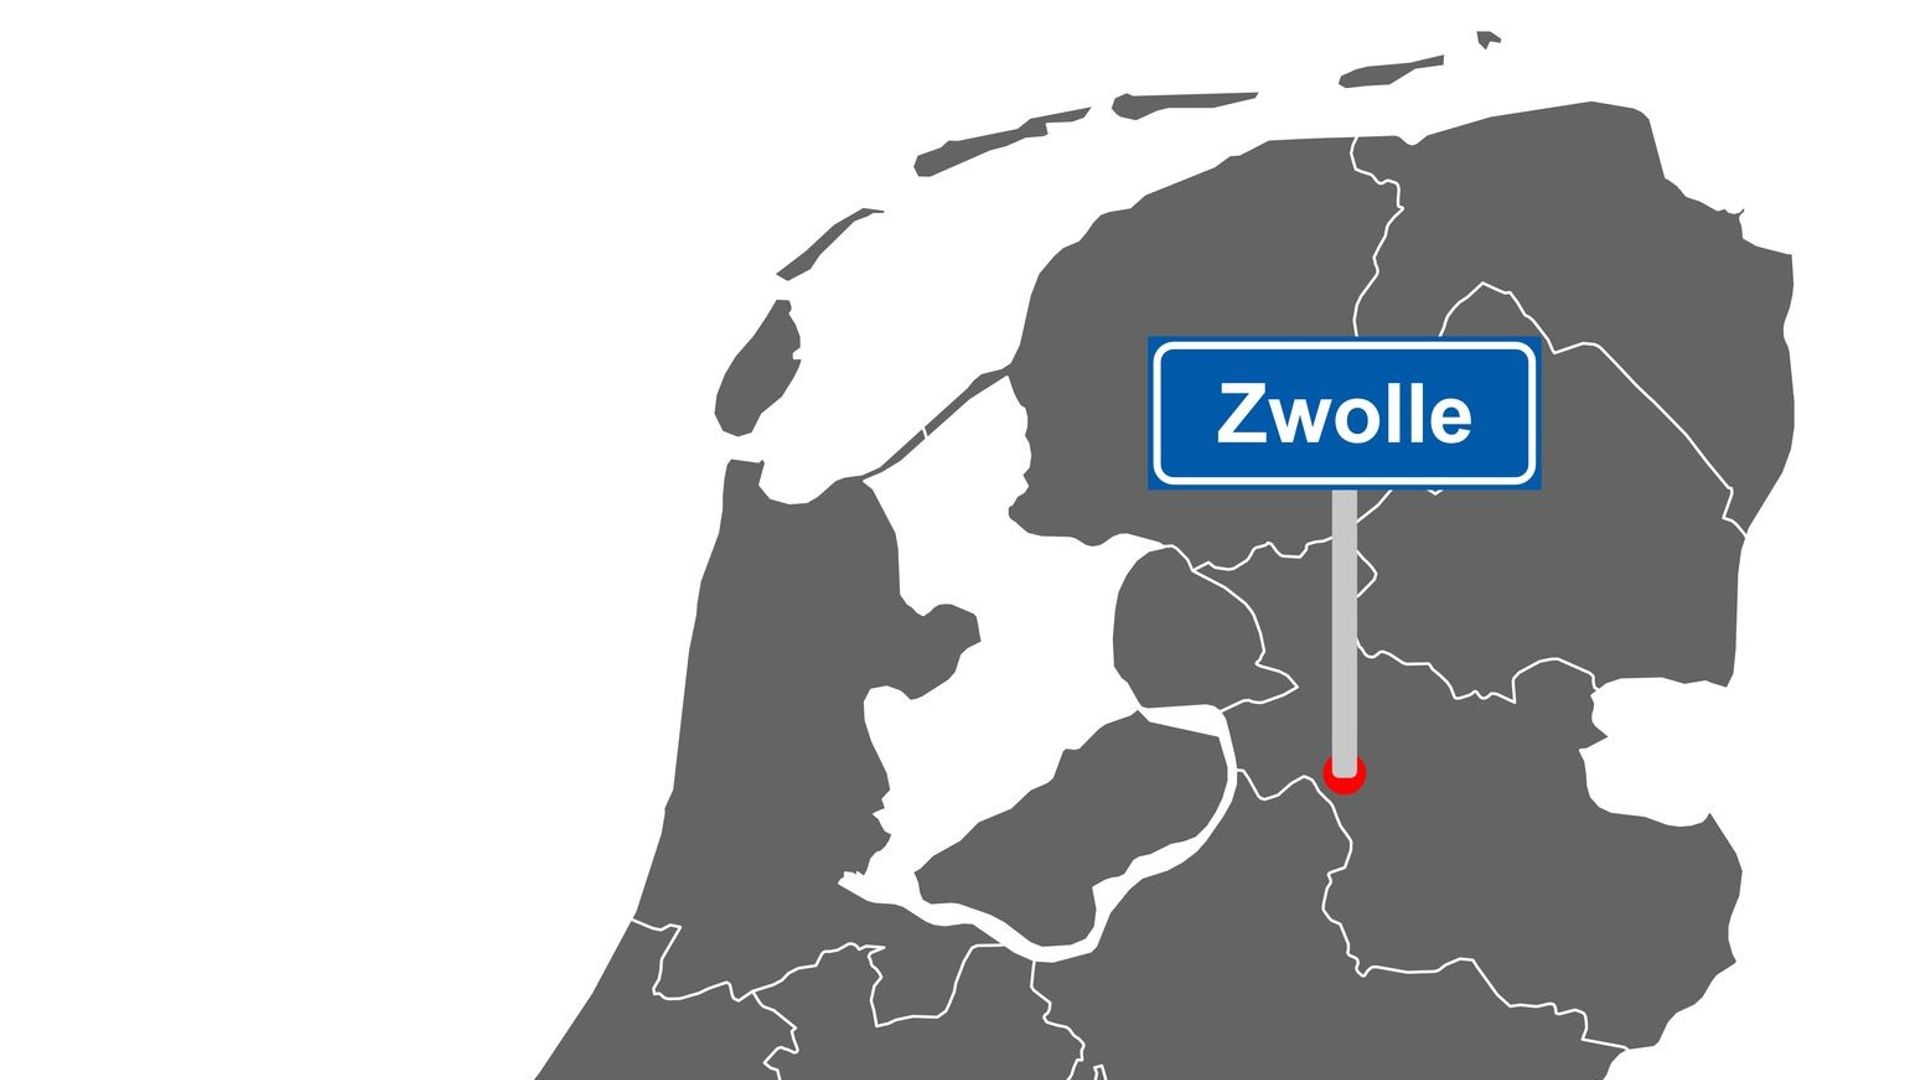 Ville néerlandaise d'environ 50 000 habitants, Zwolle est le chef lieu de la province d'Overijssel